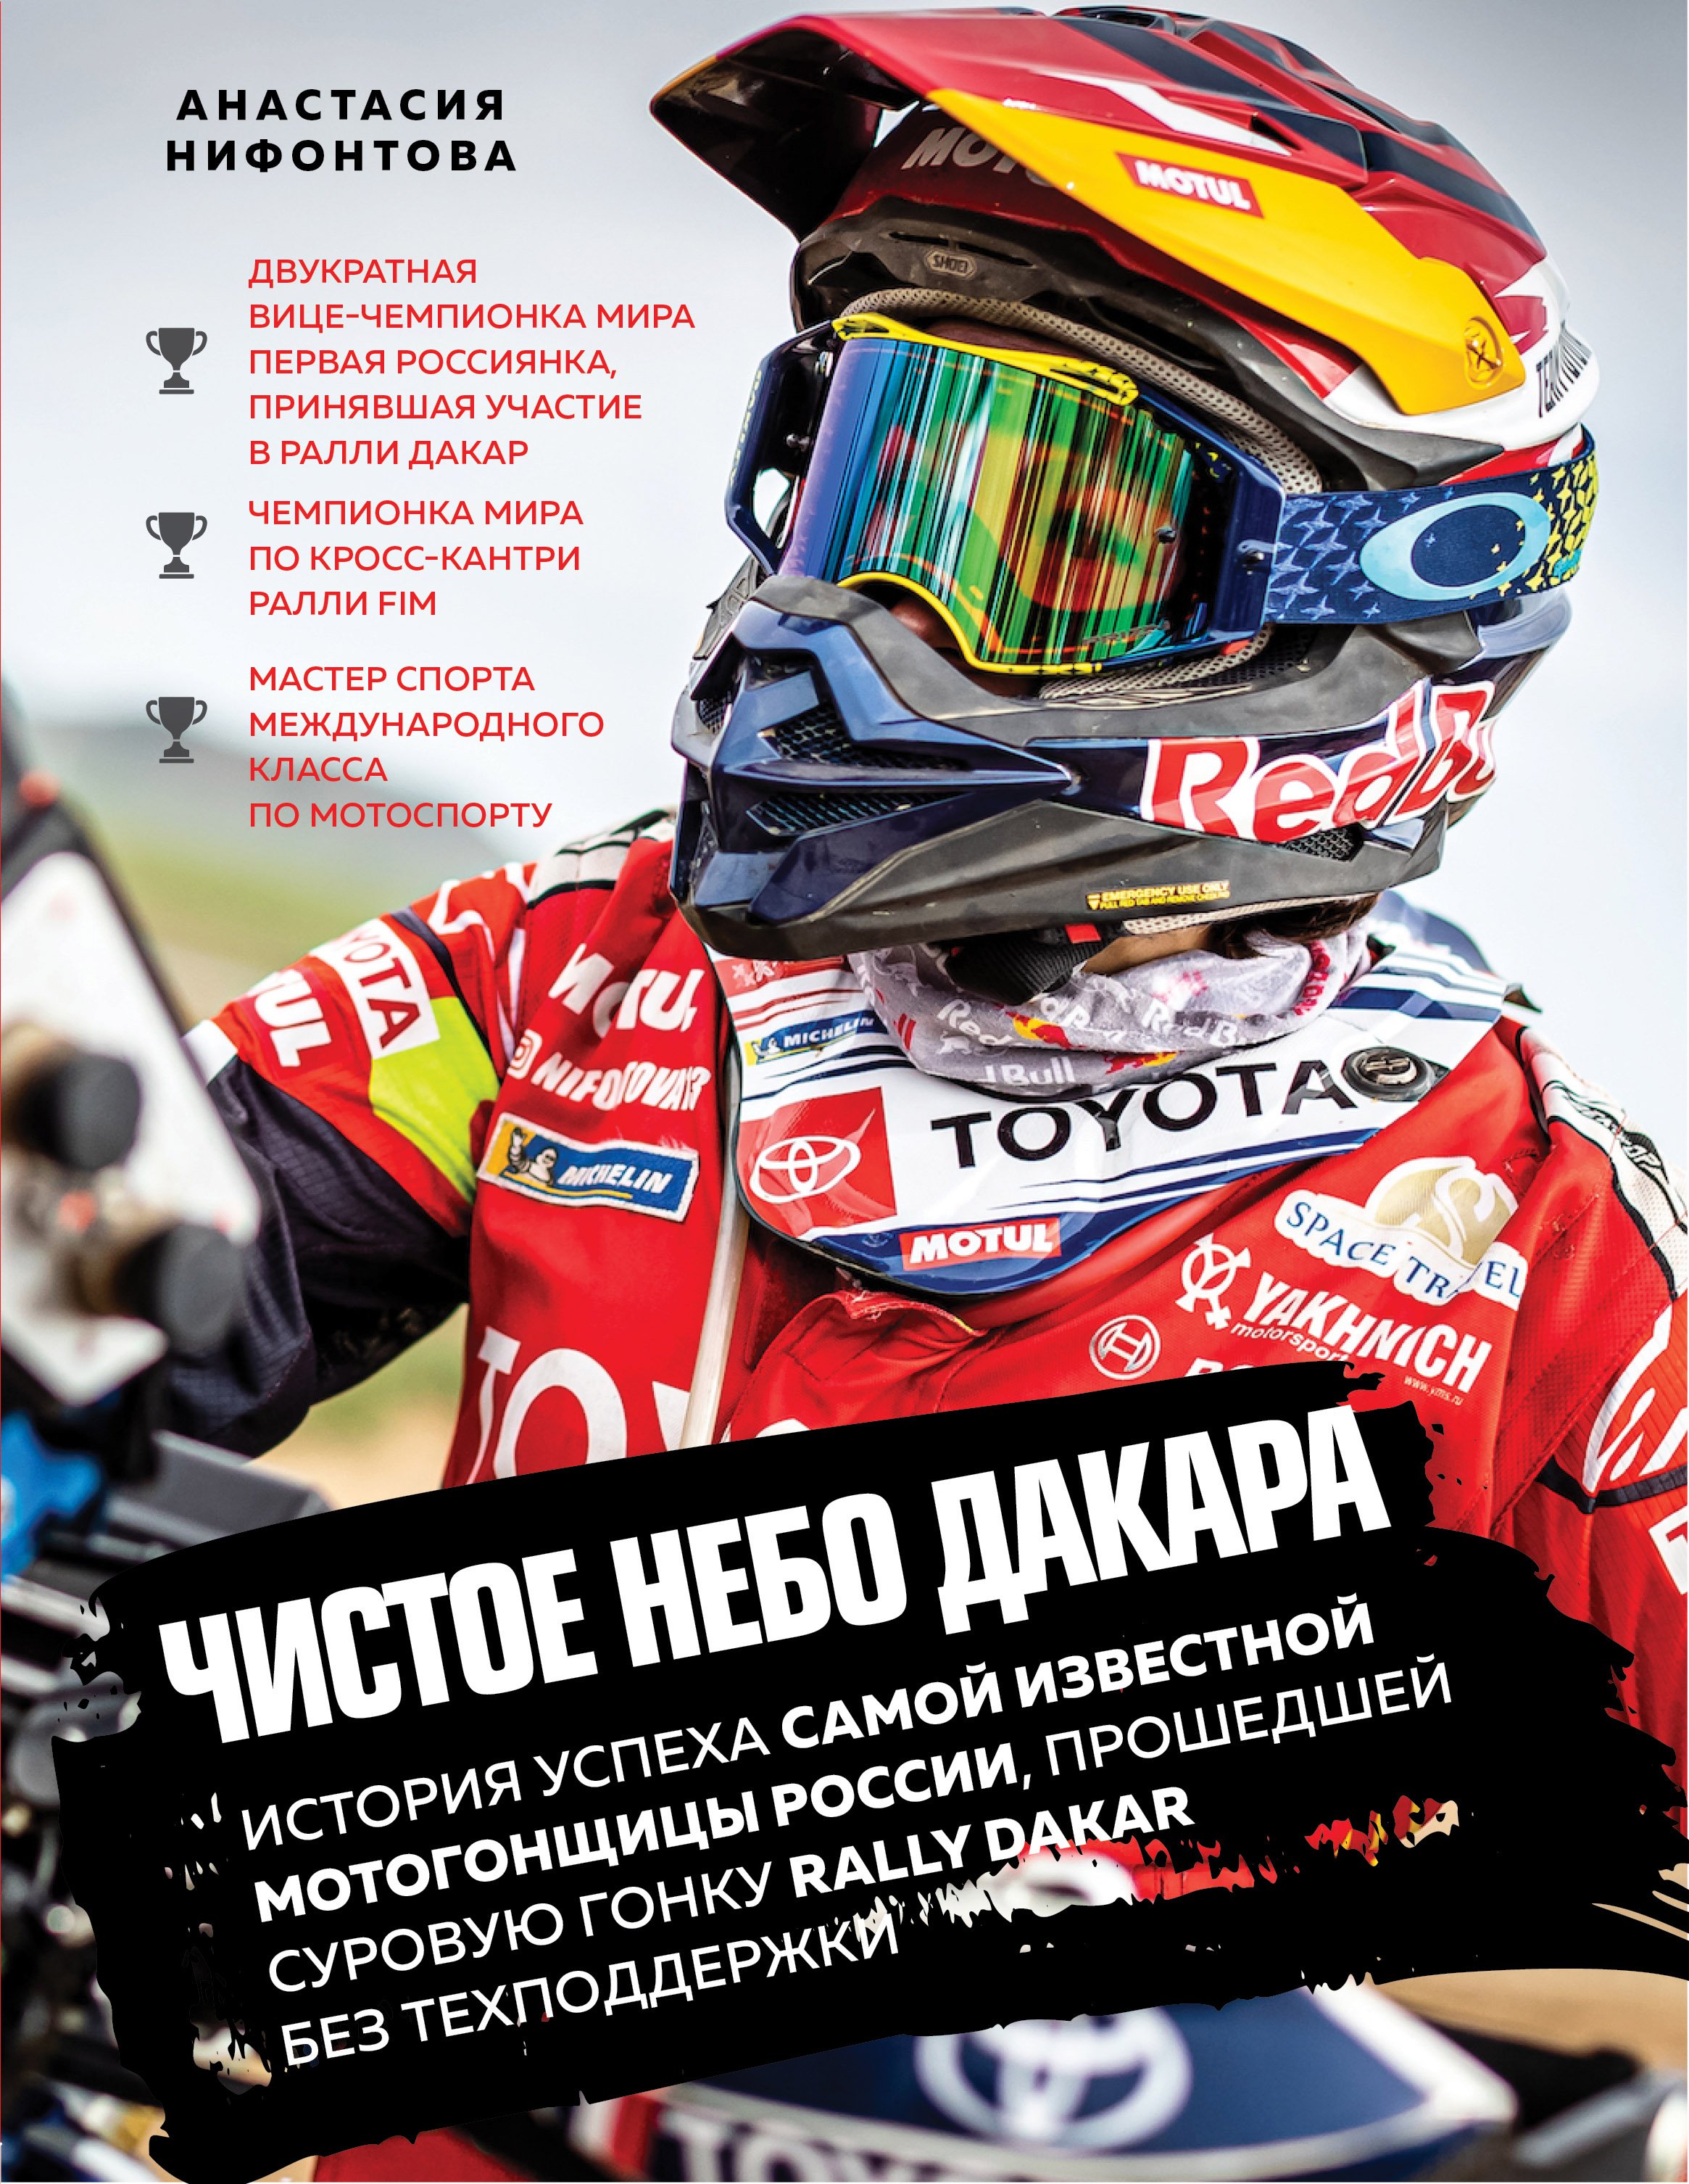 Чистое небо Дакара. История успеха самой известной мотогонщицы России, прошедшей суровую гонку Rally Dakar без техподдержки (с автографом)